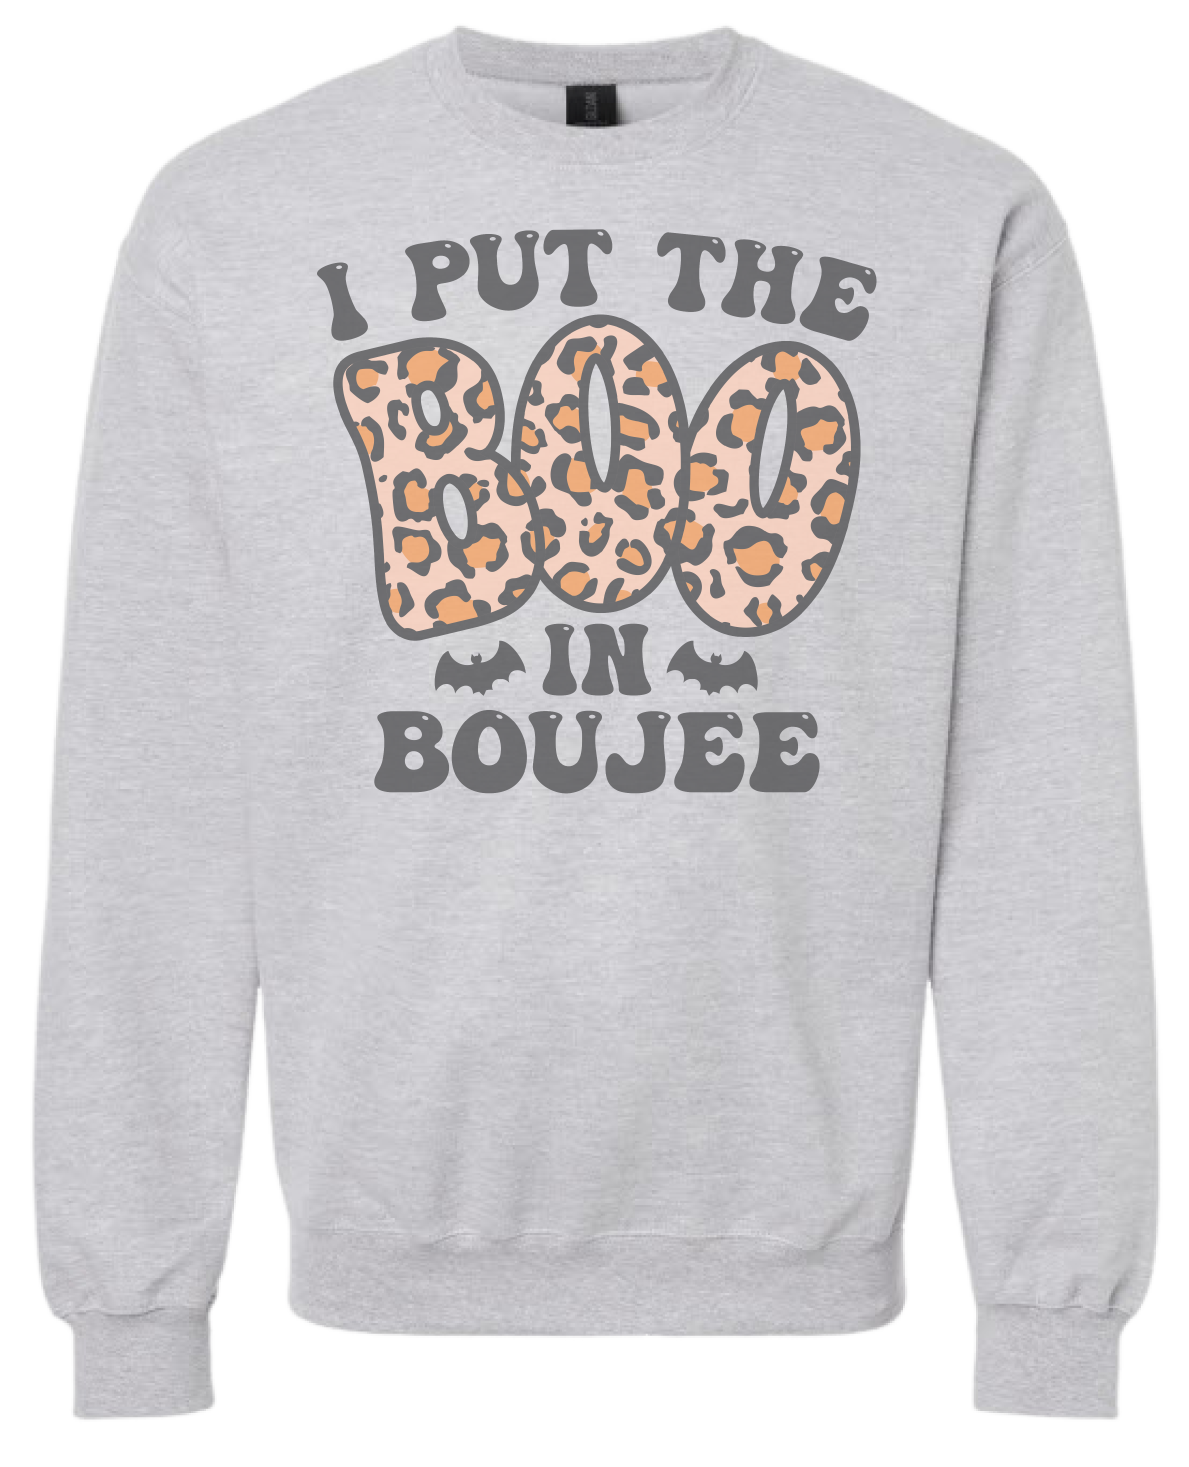 I Put The Boo In Boujee Sweatshirt